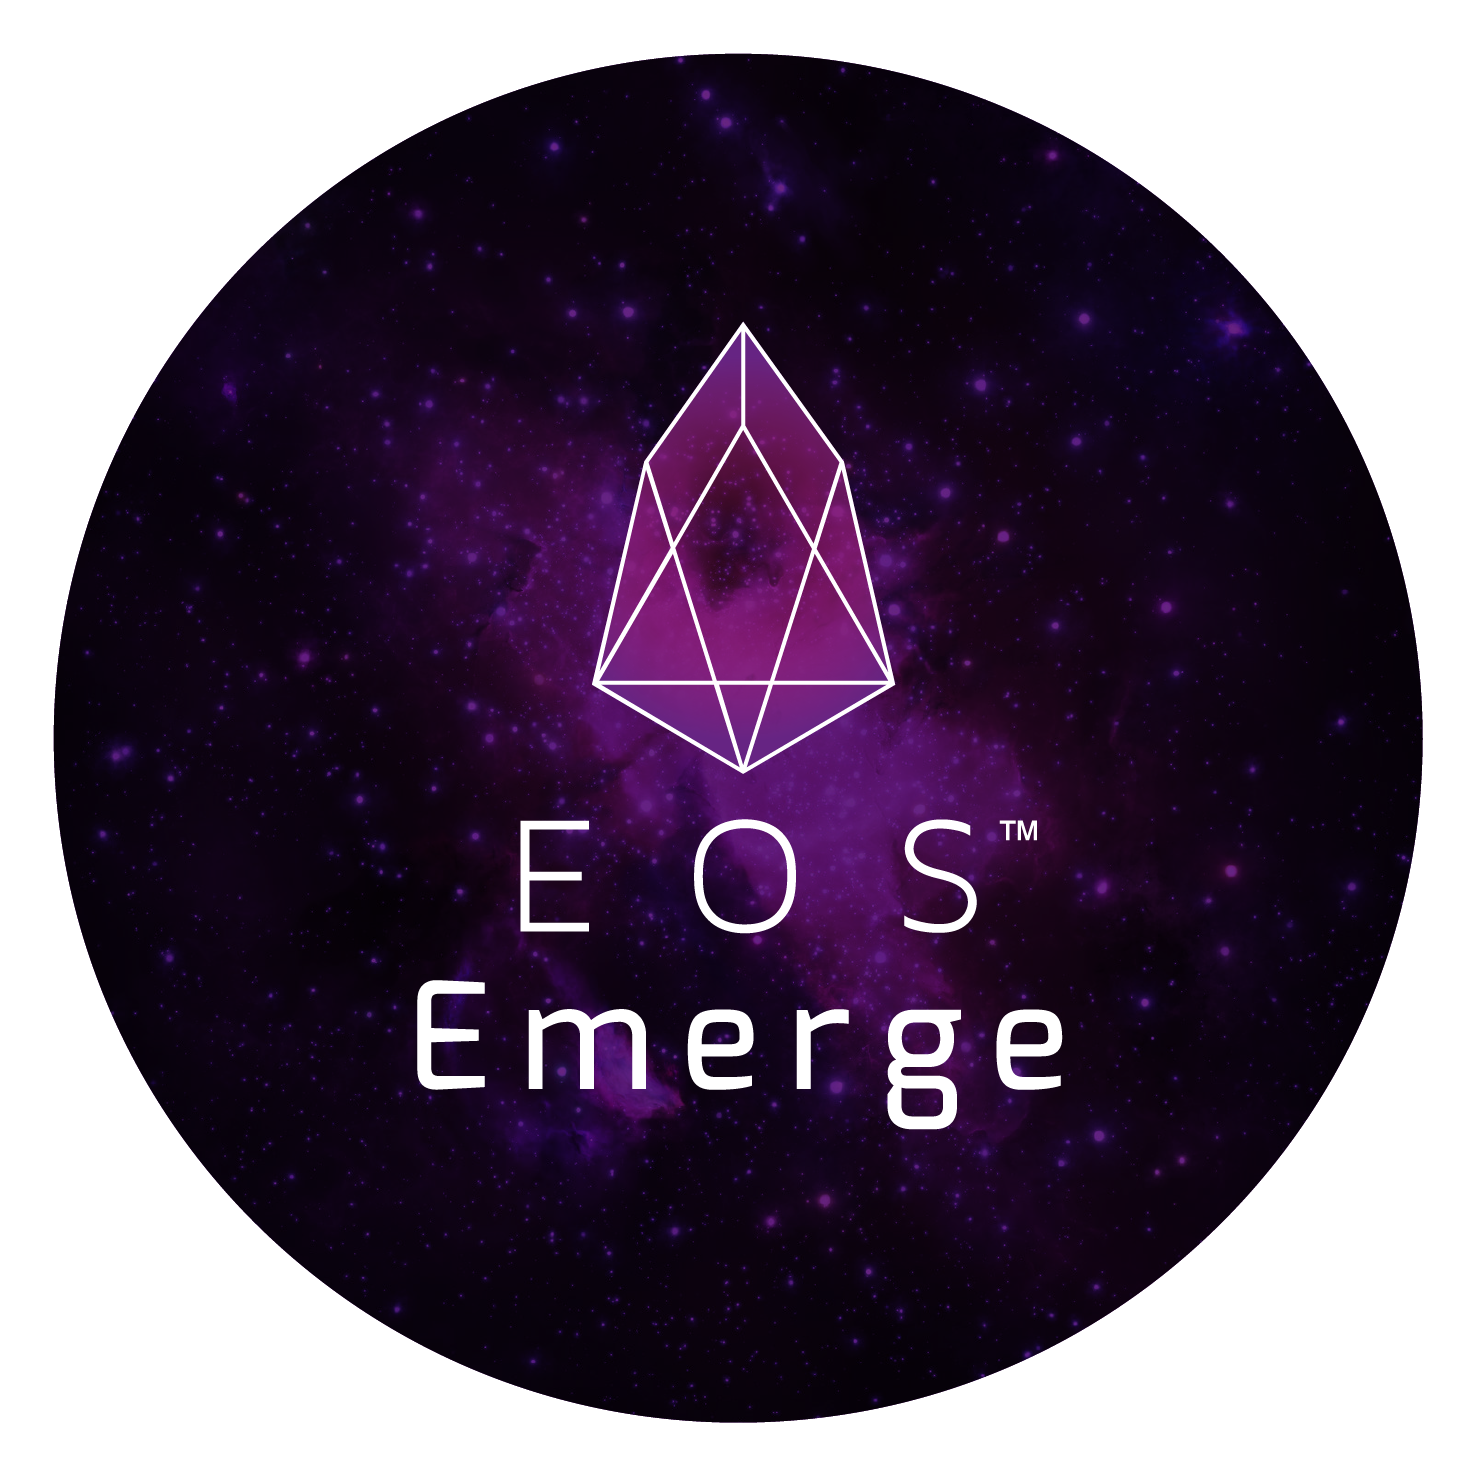 Eos emerge 2b.png